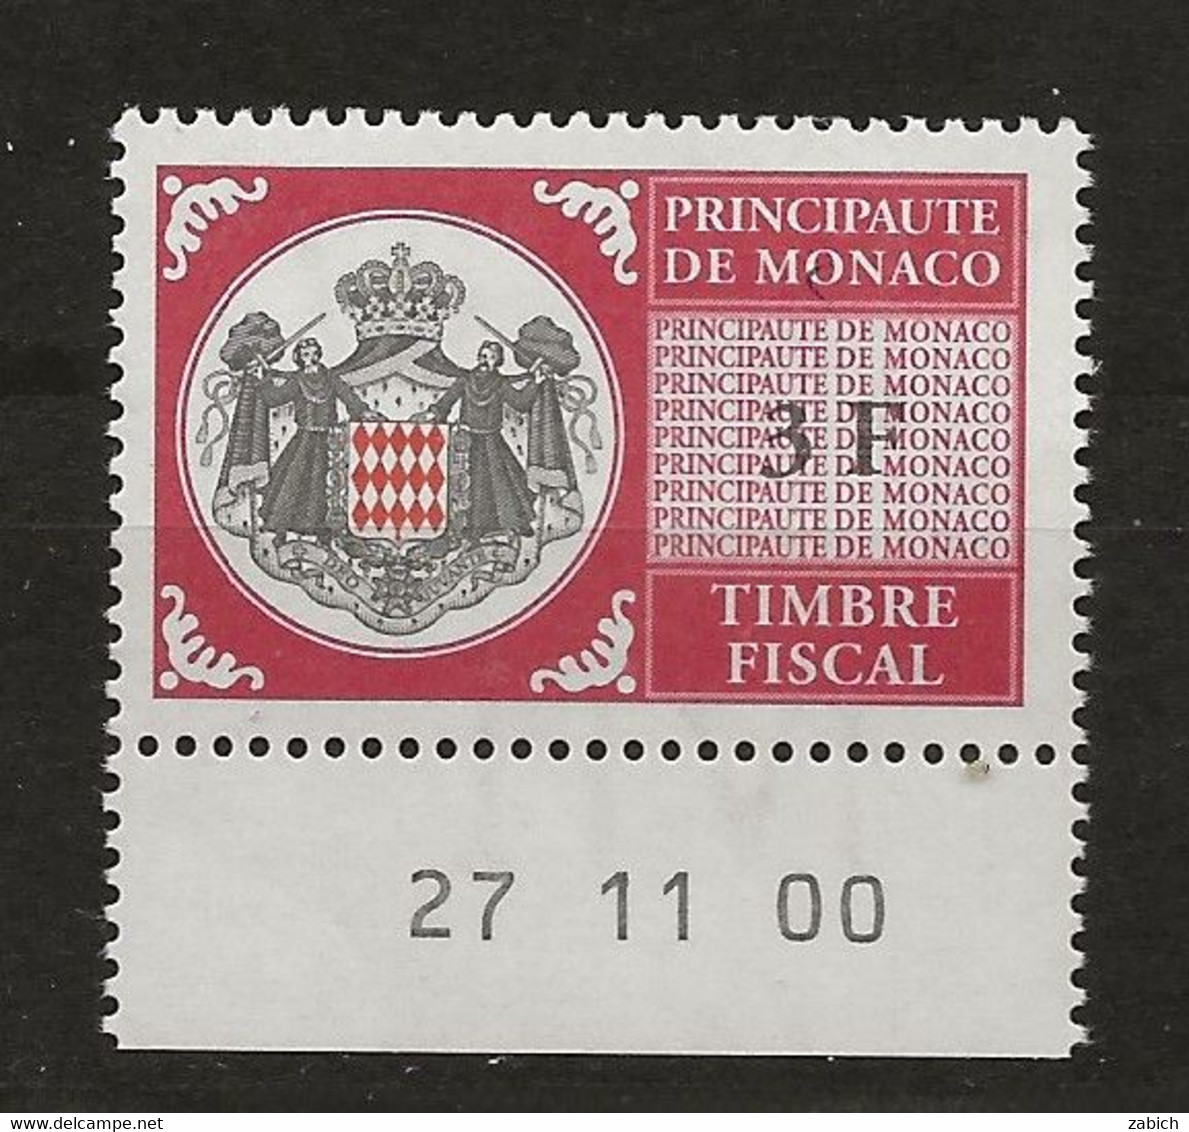 TIMBRES FISCAUX DE MONACO SERIE UNIFIEE N°99 3 F Rouge  Coin Daté Du 27 11 00 Neuf Gomme Mnh (**) - Fiscaux